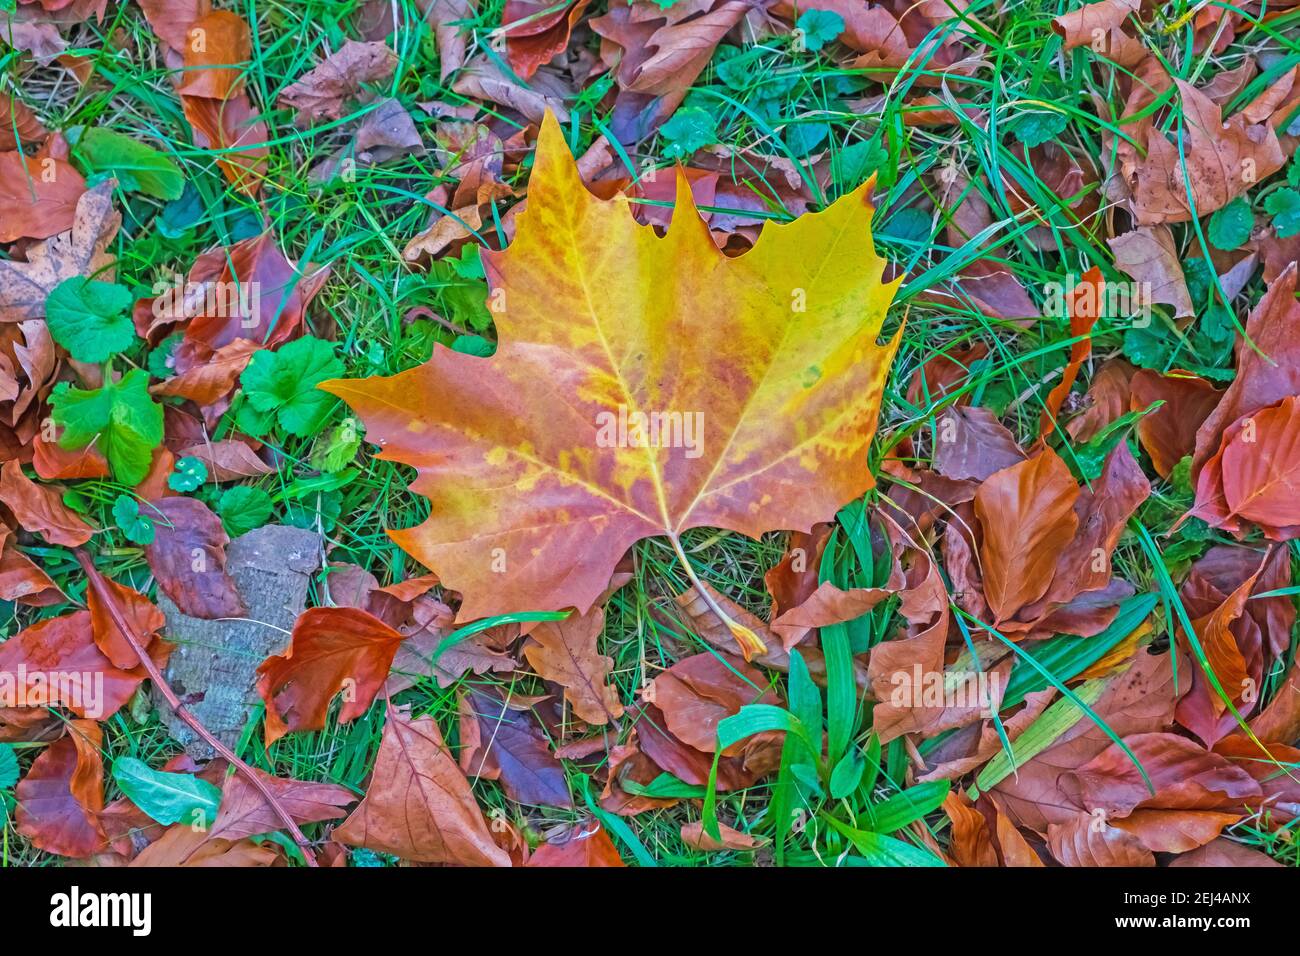 Riassunto: Autunno foglia di Sycamore giacente a terra tra altre foglie, erbe e piante cadute Foto Stock